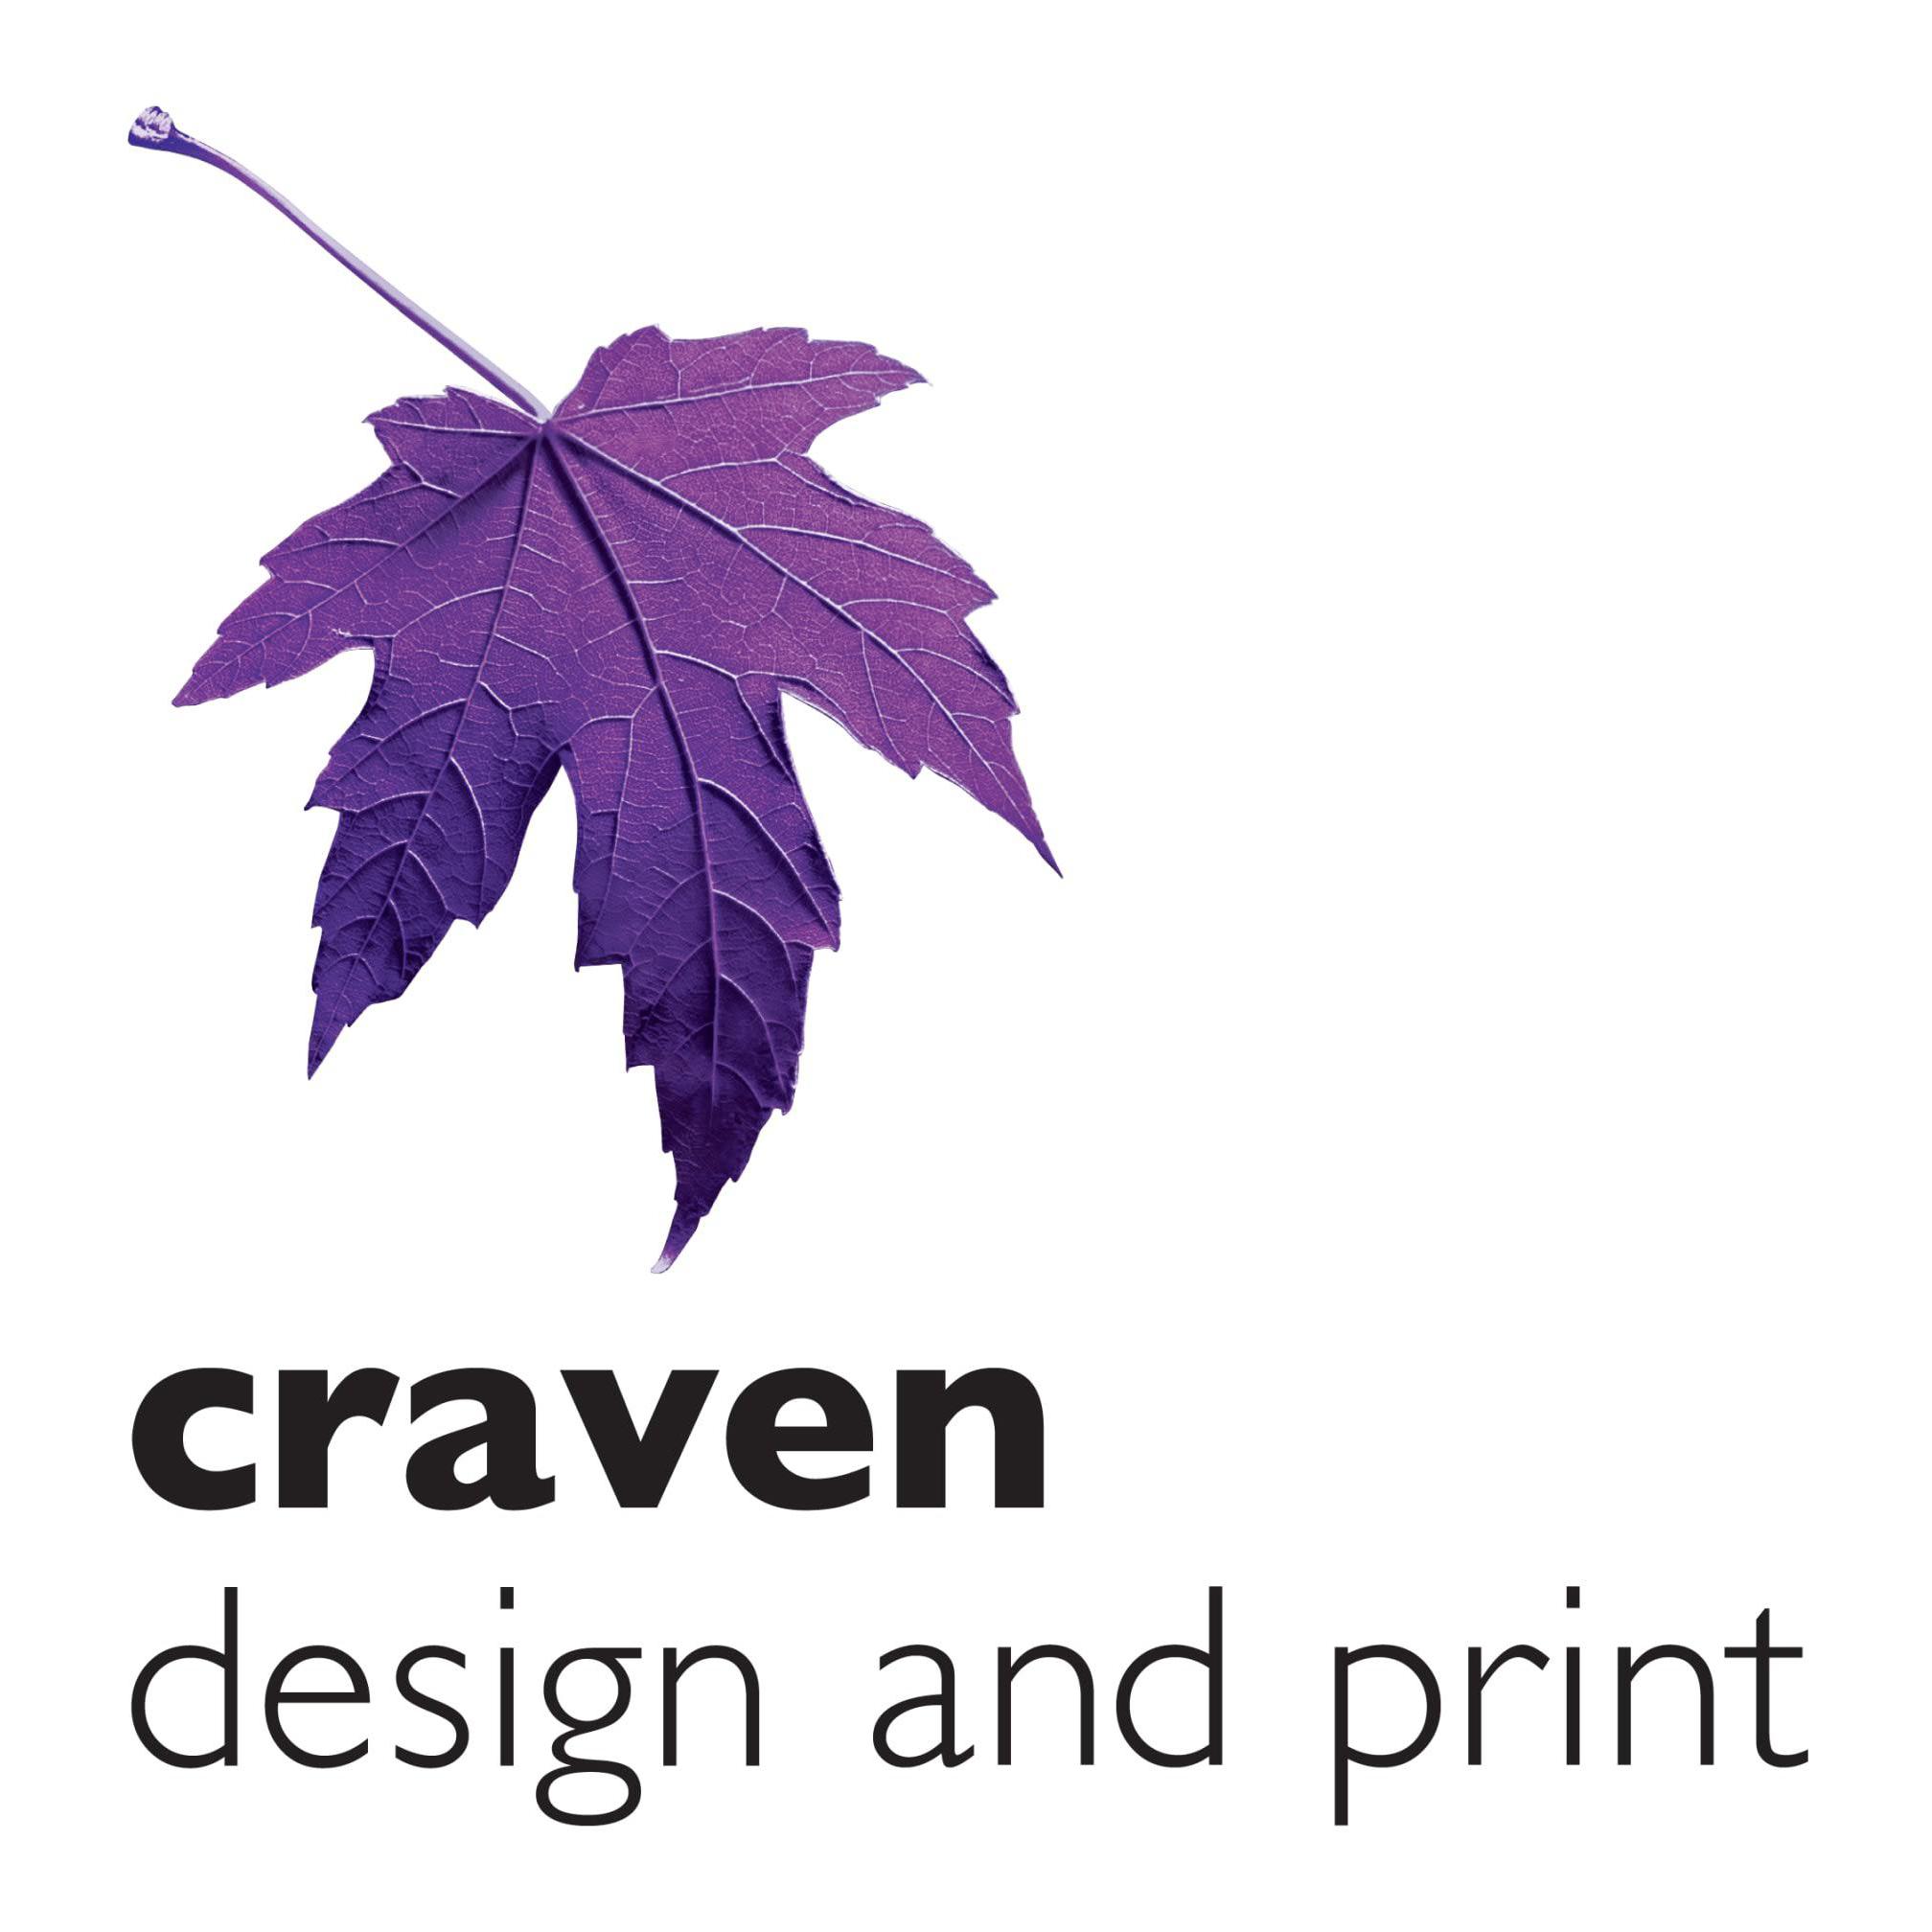 Craven Design & Print - Craven Arms, Shropshire SY7 8NR - 01588 673972 | ShowMeLocal.com